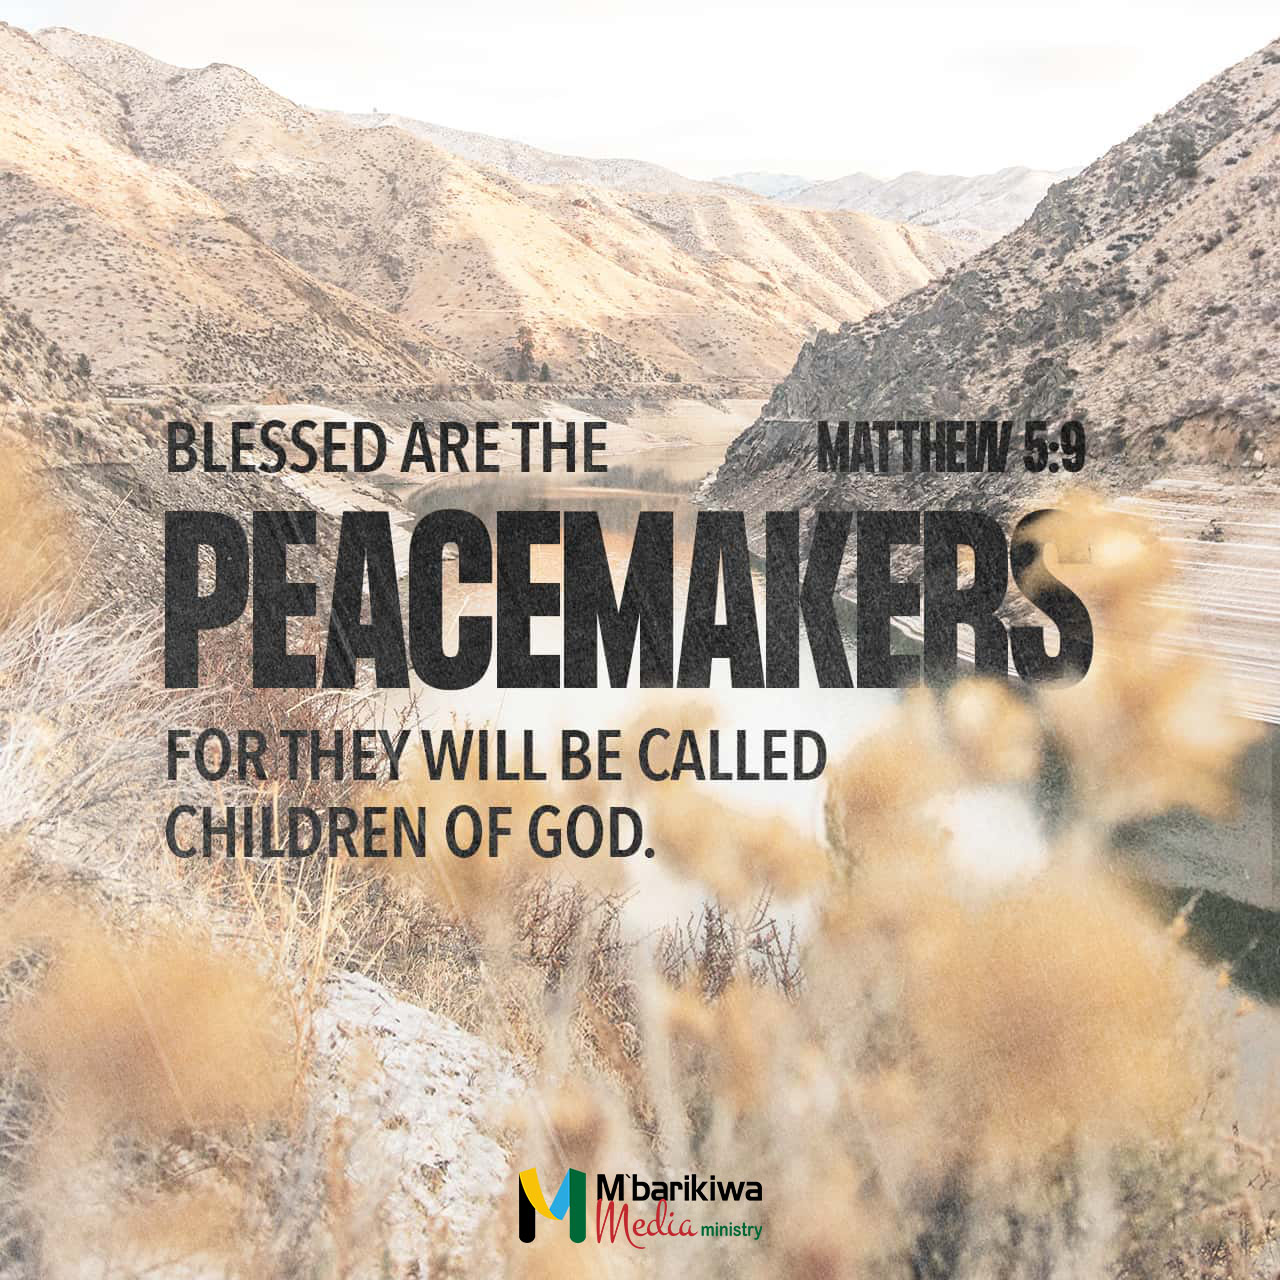 Matthew 5:9 KJV